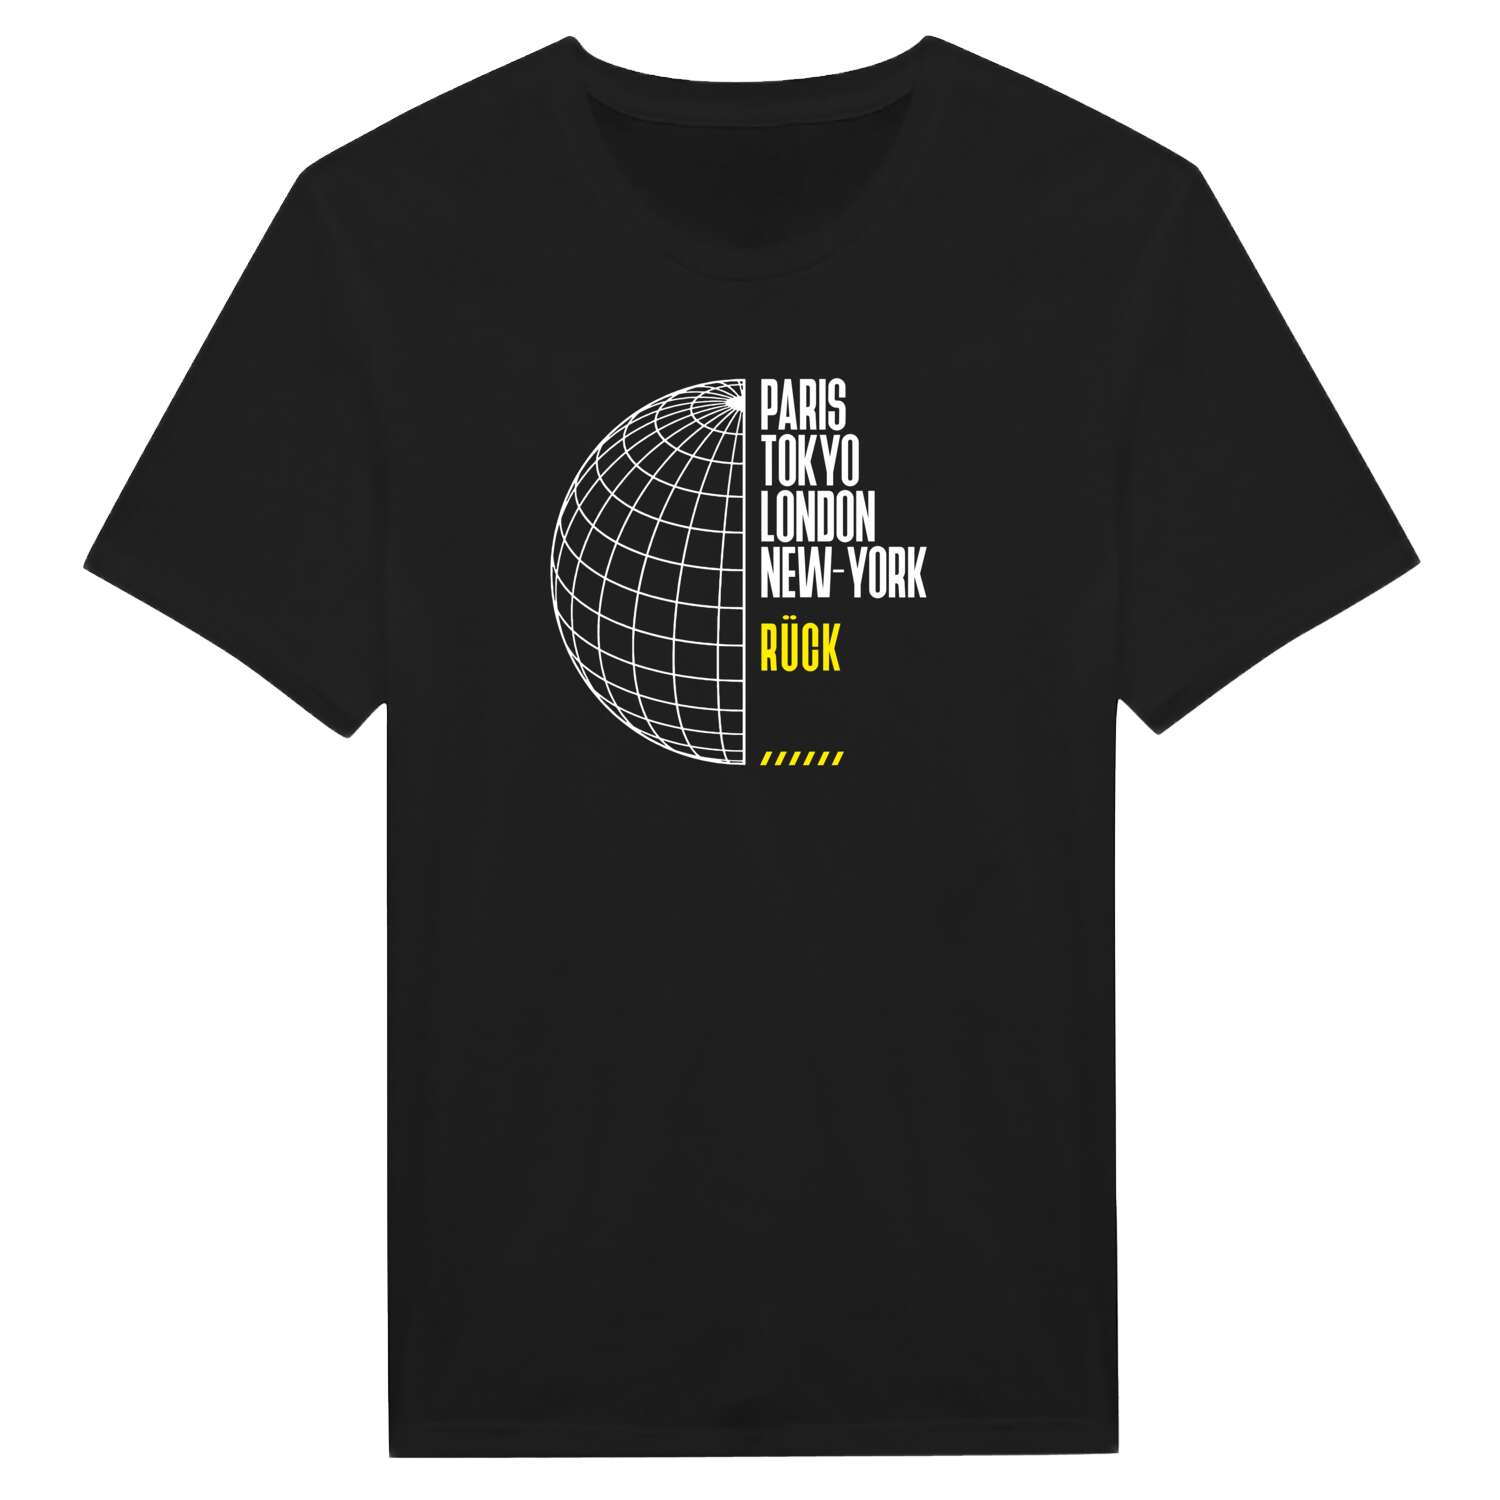 Rück T-Shirt »Paris Tokyo London«